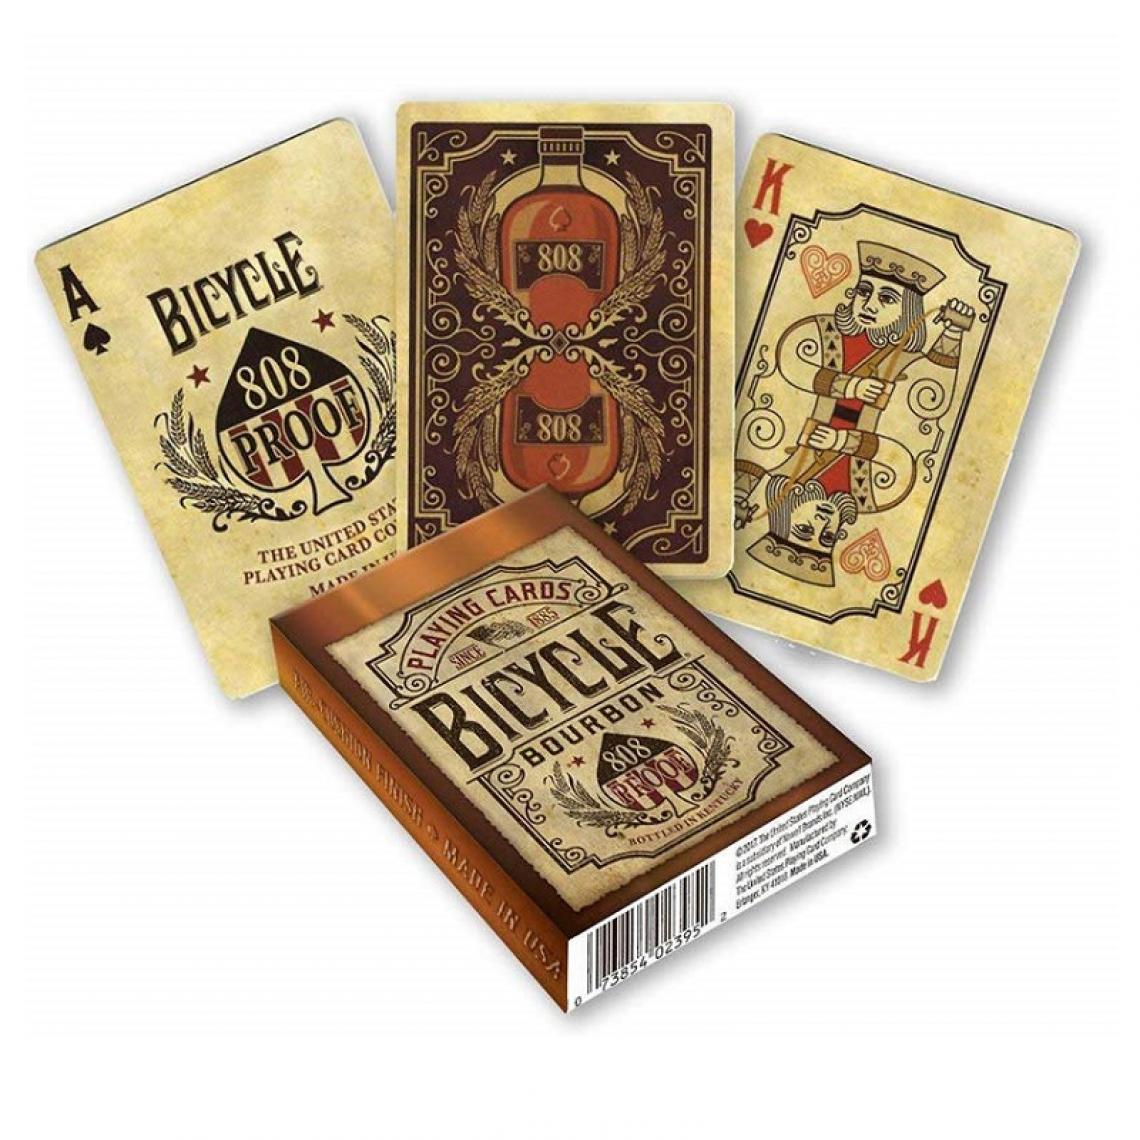 Universal - Jeu de cartes Kentucky Whisky Deck Collection Jeu de cartes Trucs magiques Accessoires Magicien(Jaune) - Jeux de cartes